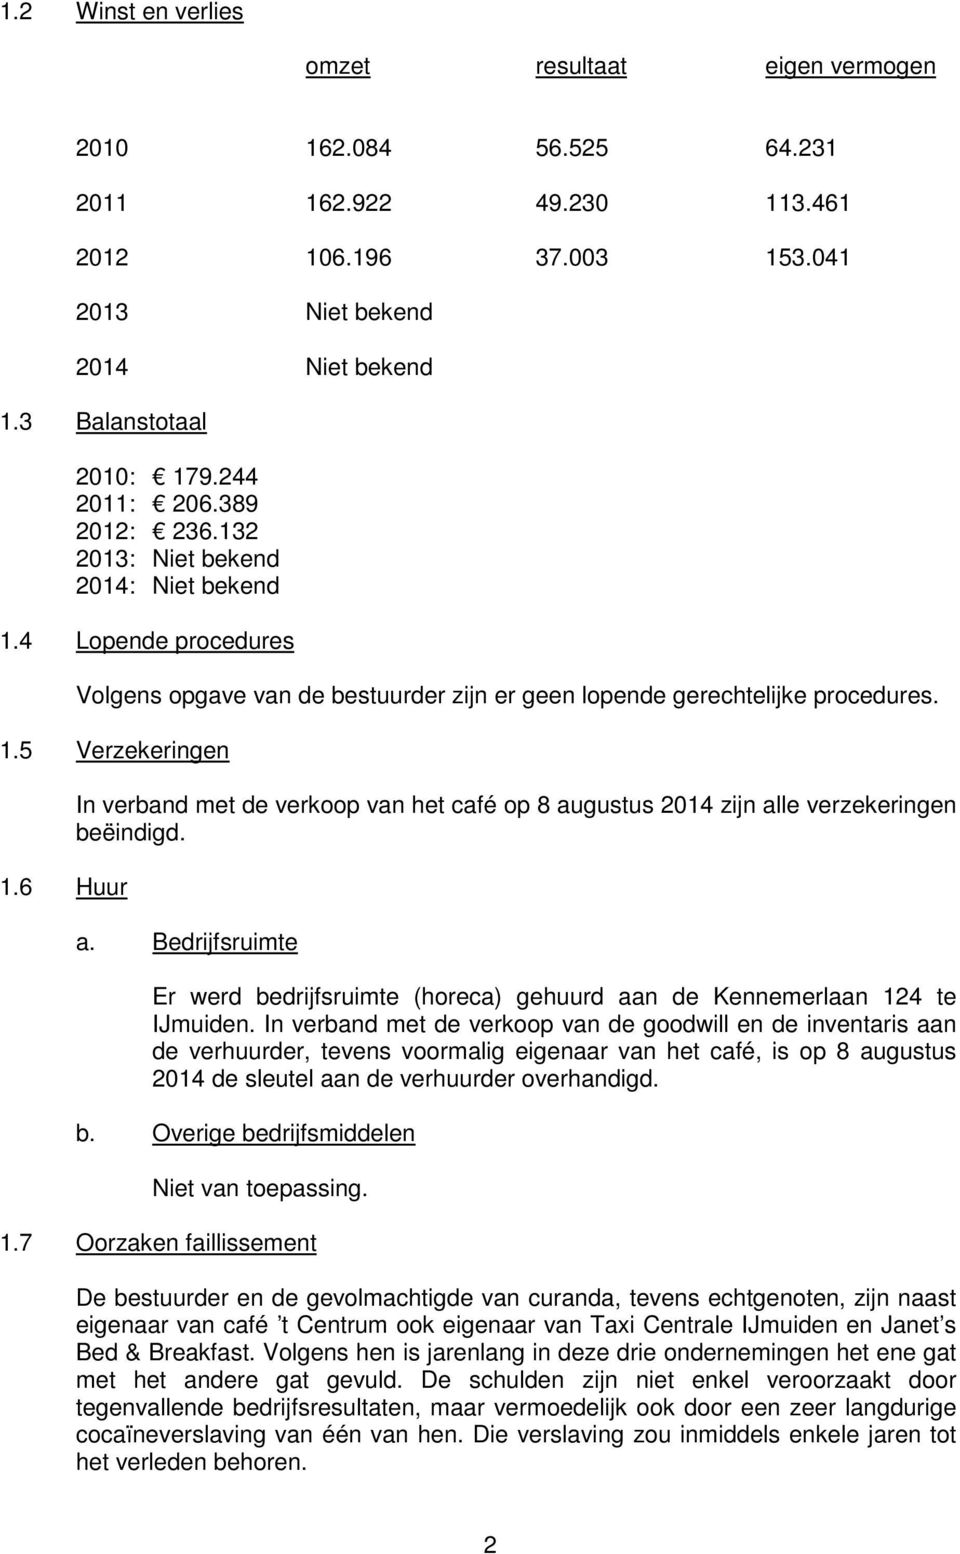 6 Huur In verband met de verkoop van het café op 8 augustus 2014 zijn alle verzekeringen beëindigd. a. Bedrijfsruimte Er werd bedrijfsruimte (horeca) gehuurd aan de Kennemerlaan 124 te IJmuiden.